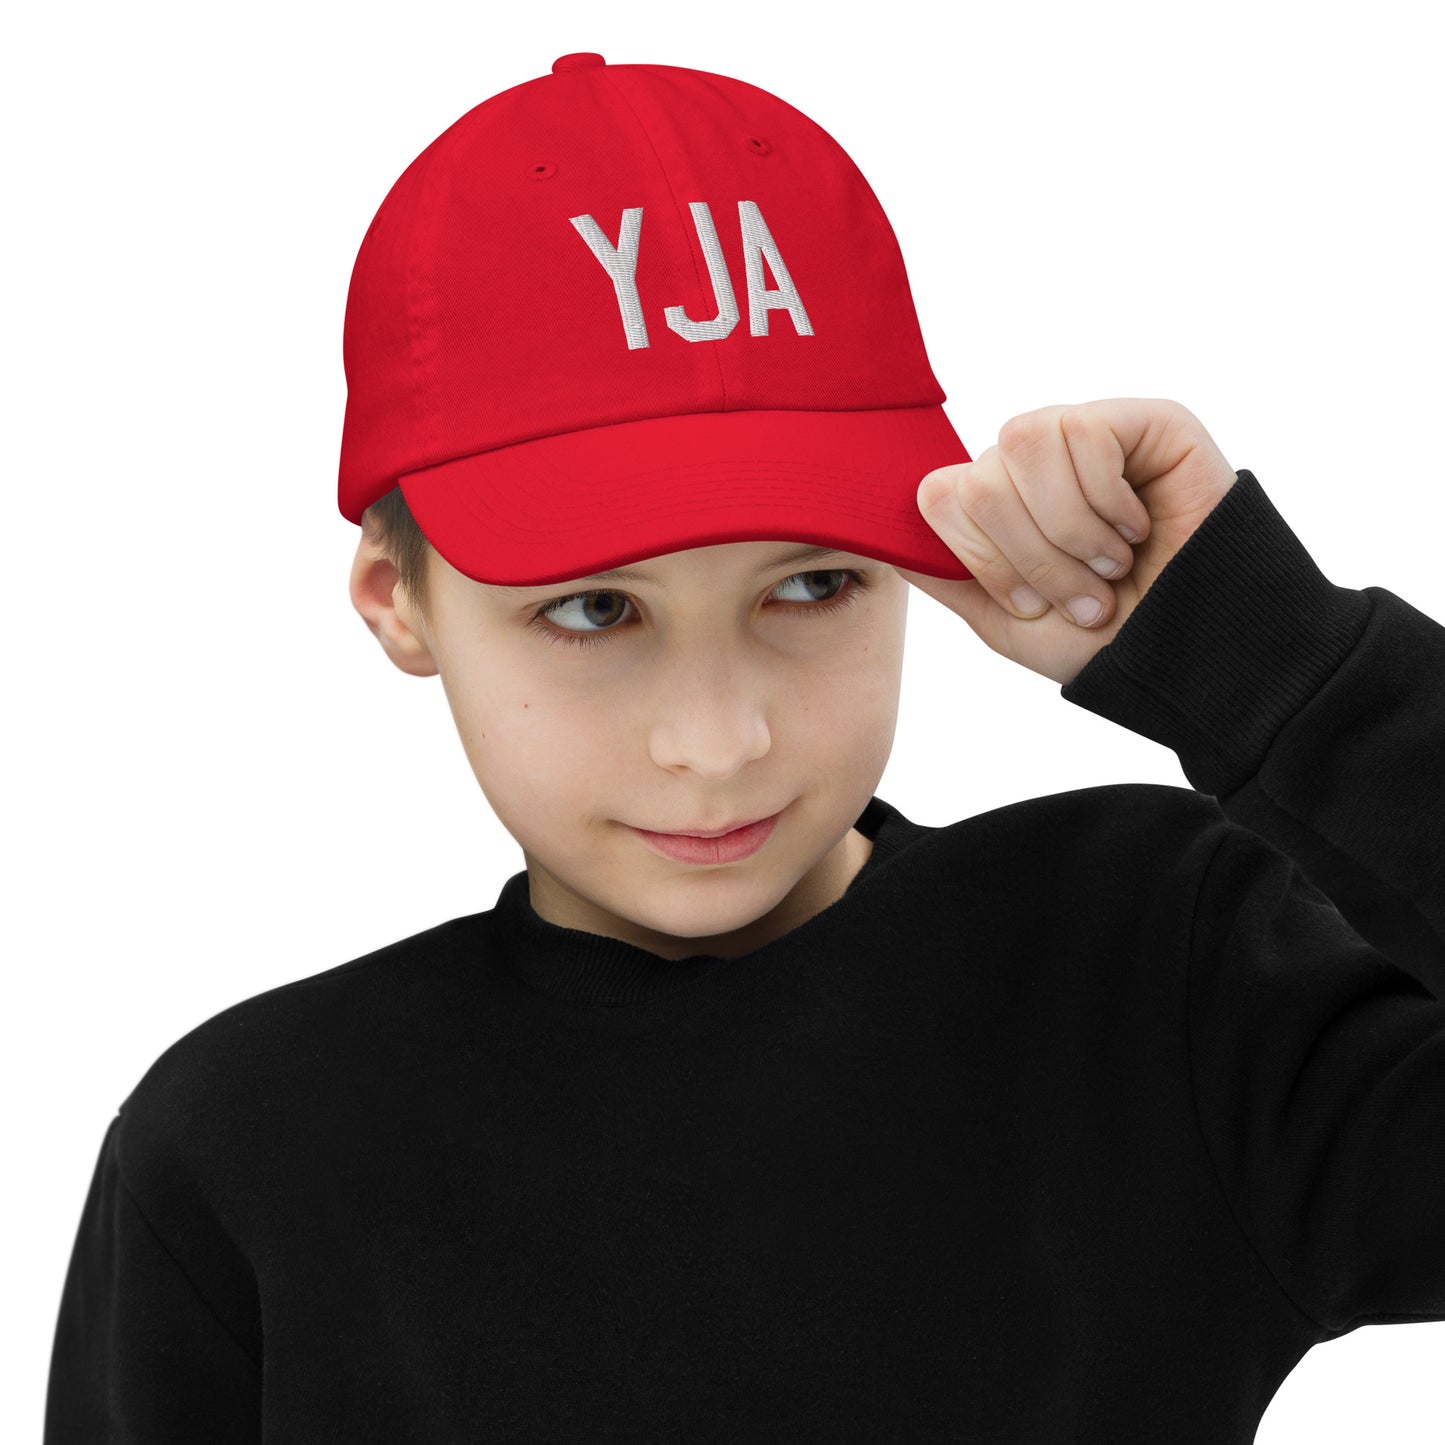 Airport Code Kid's Baseball Cap - White • YJA Jasper • YHM Designs - Image 04